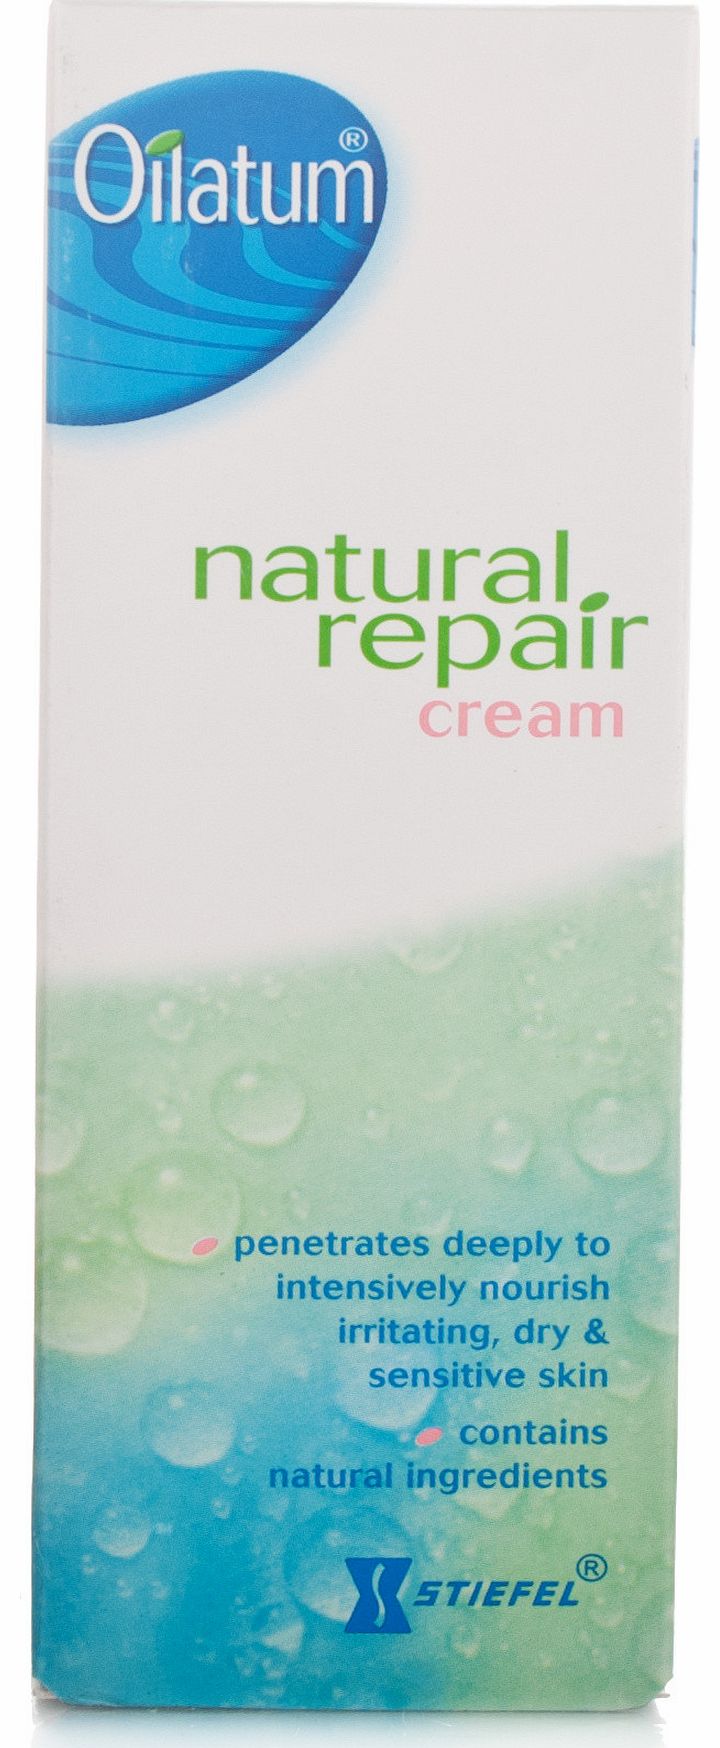 oilatum Natural Repair Cream